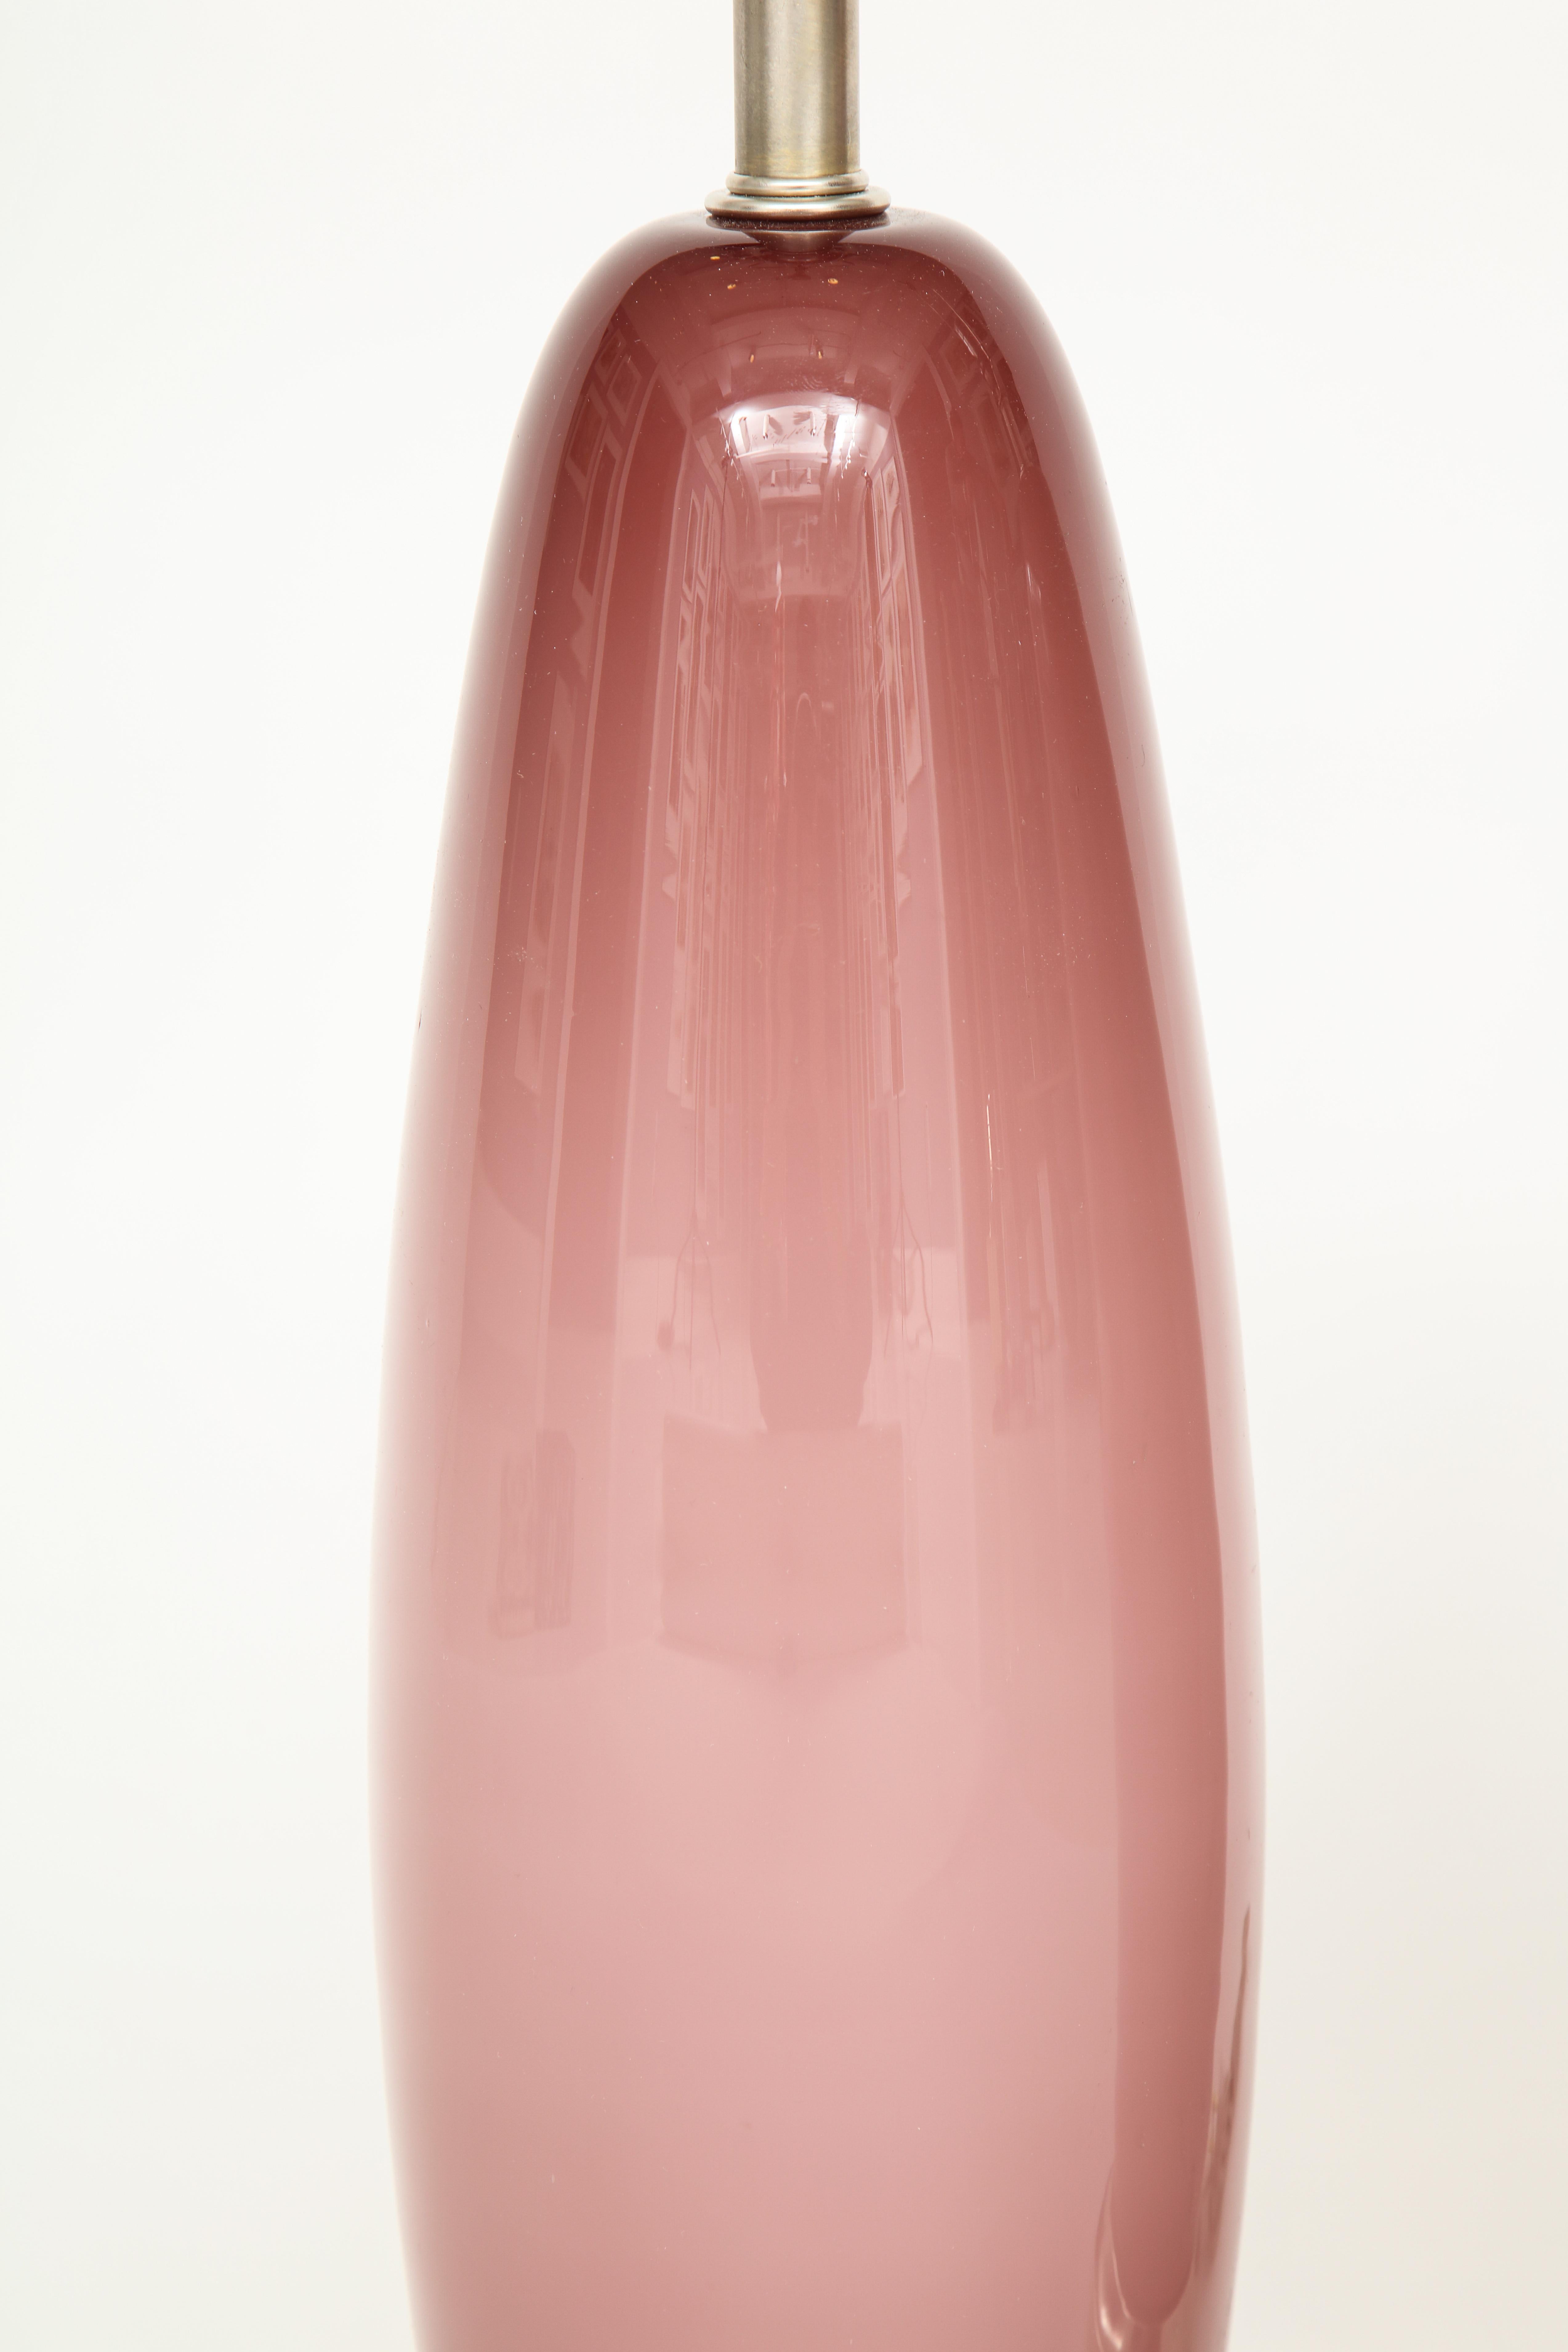 Paris Pink Murano Glass Lamps 2